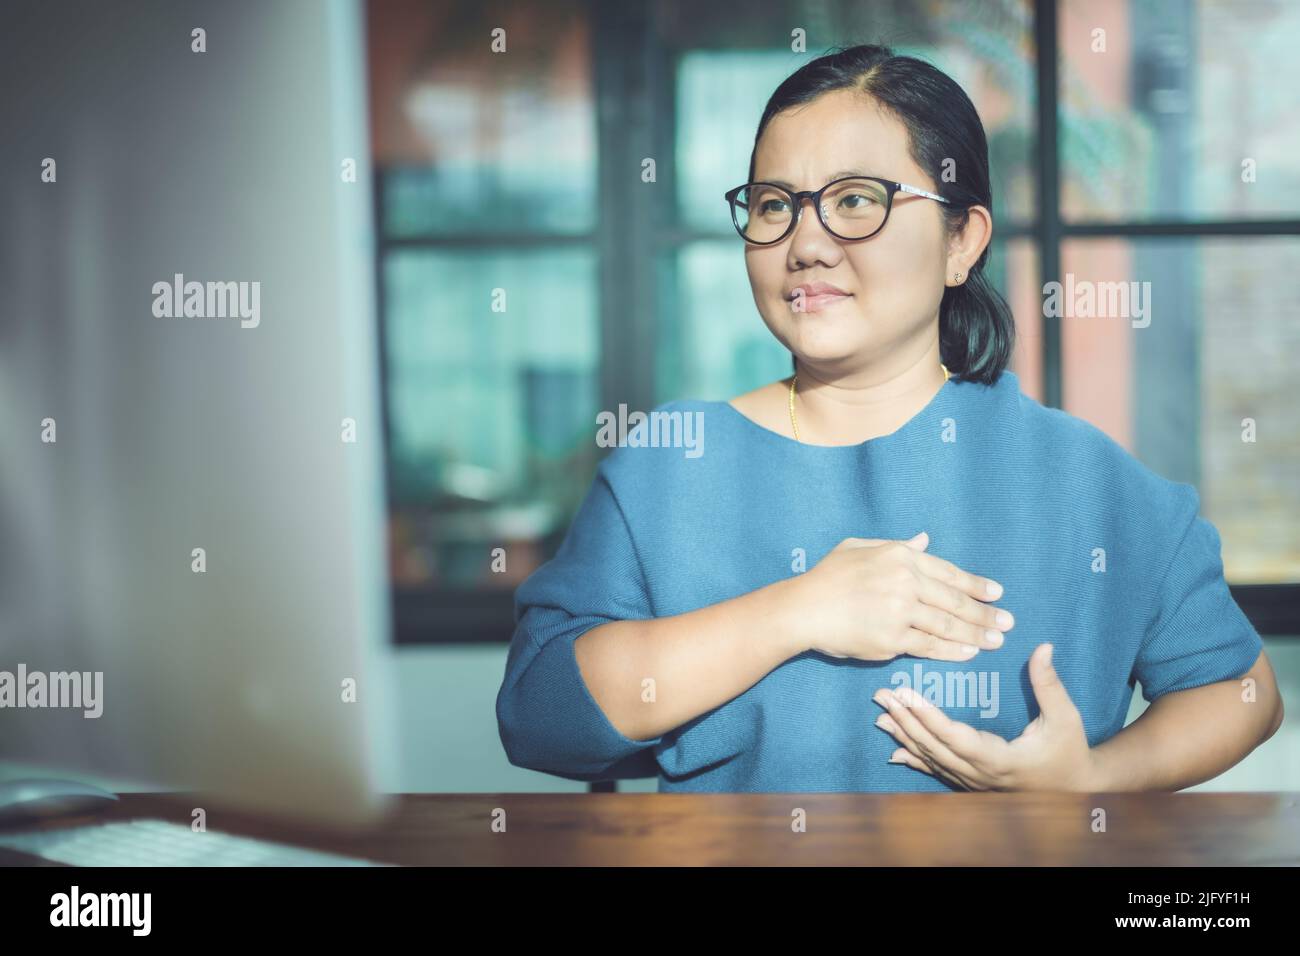 Brustkrebs-Konzept: Asiatische Frau, die Computerbildschirm zum Lernen über das Überprüfen der Brust durch selbst schaut Stockfoto